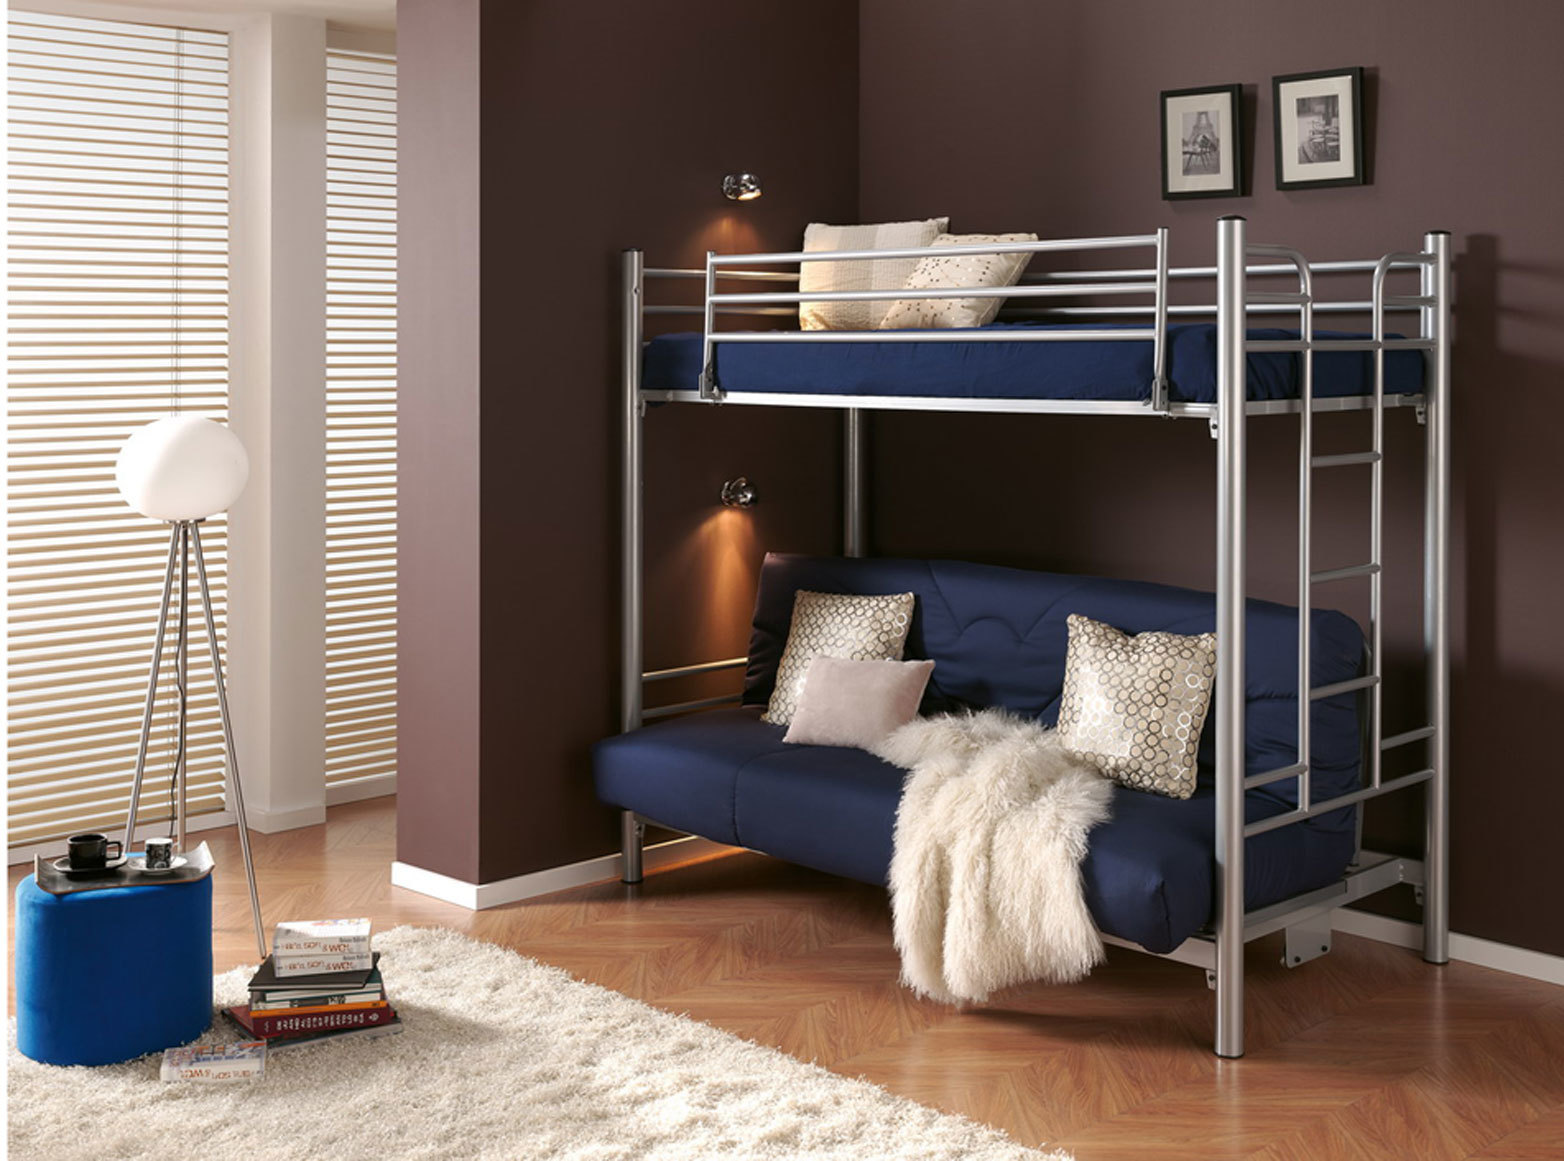 Модели двухъярусных кроватей с диваном фото